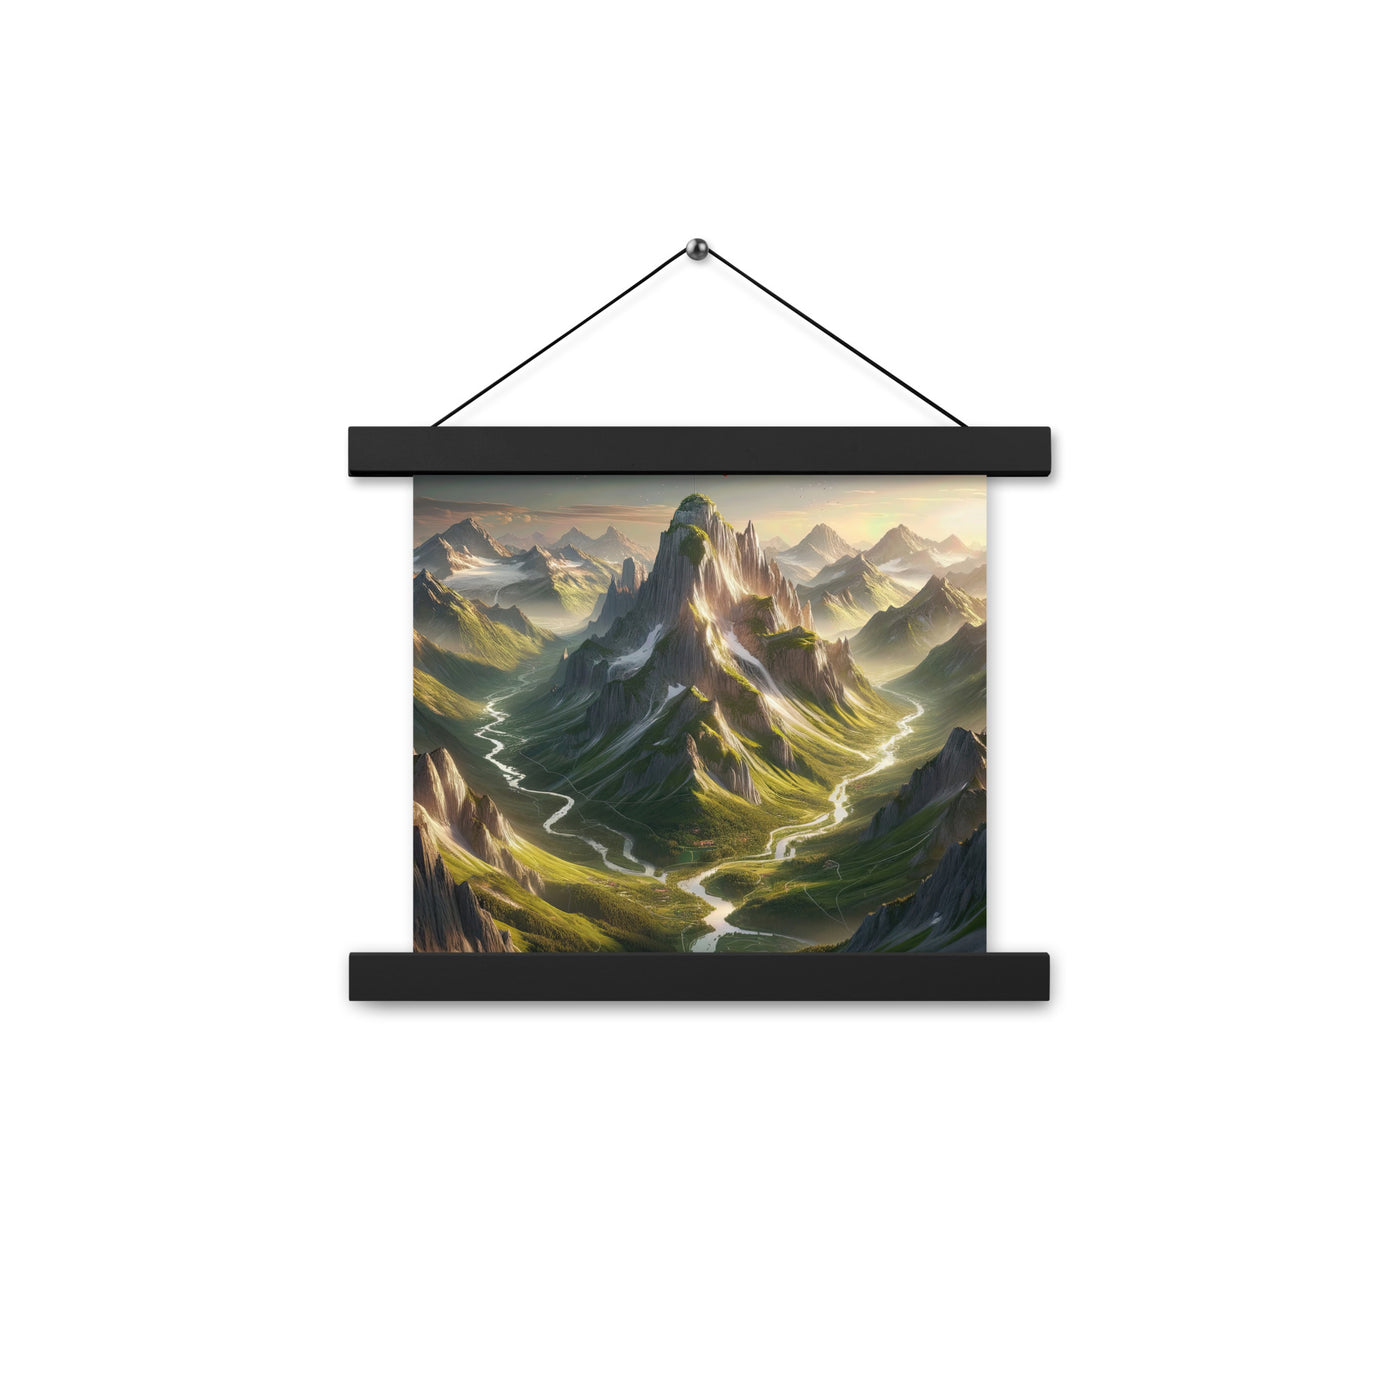 Fotorealistisches Bild der Alpen mit österreichischer Flagge, scharfen Gipfeln und grünen Tälern - Enhanced Matte Paper Poster With berge xxx yyy zzz 25.4 x 25.4 cm